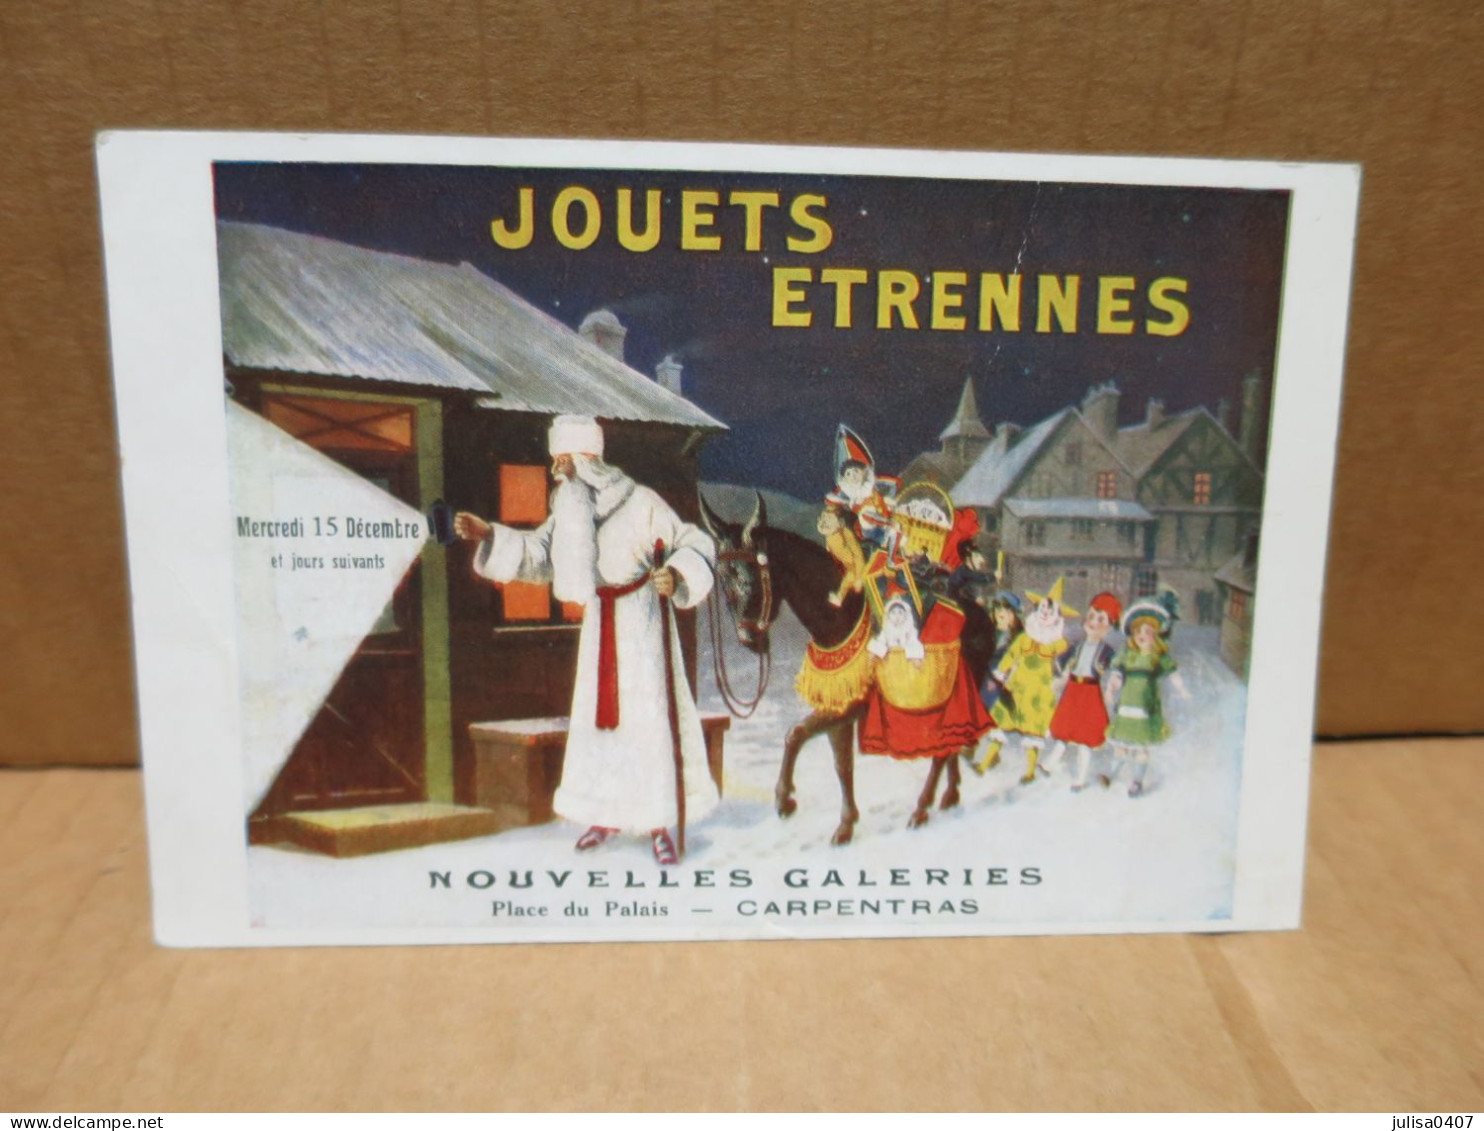 CARPENTRAS (84) Carte Publicitaire Illustrée Nouvelle Galeries Jouets étrennes Père Noel - Carpentras